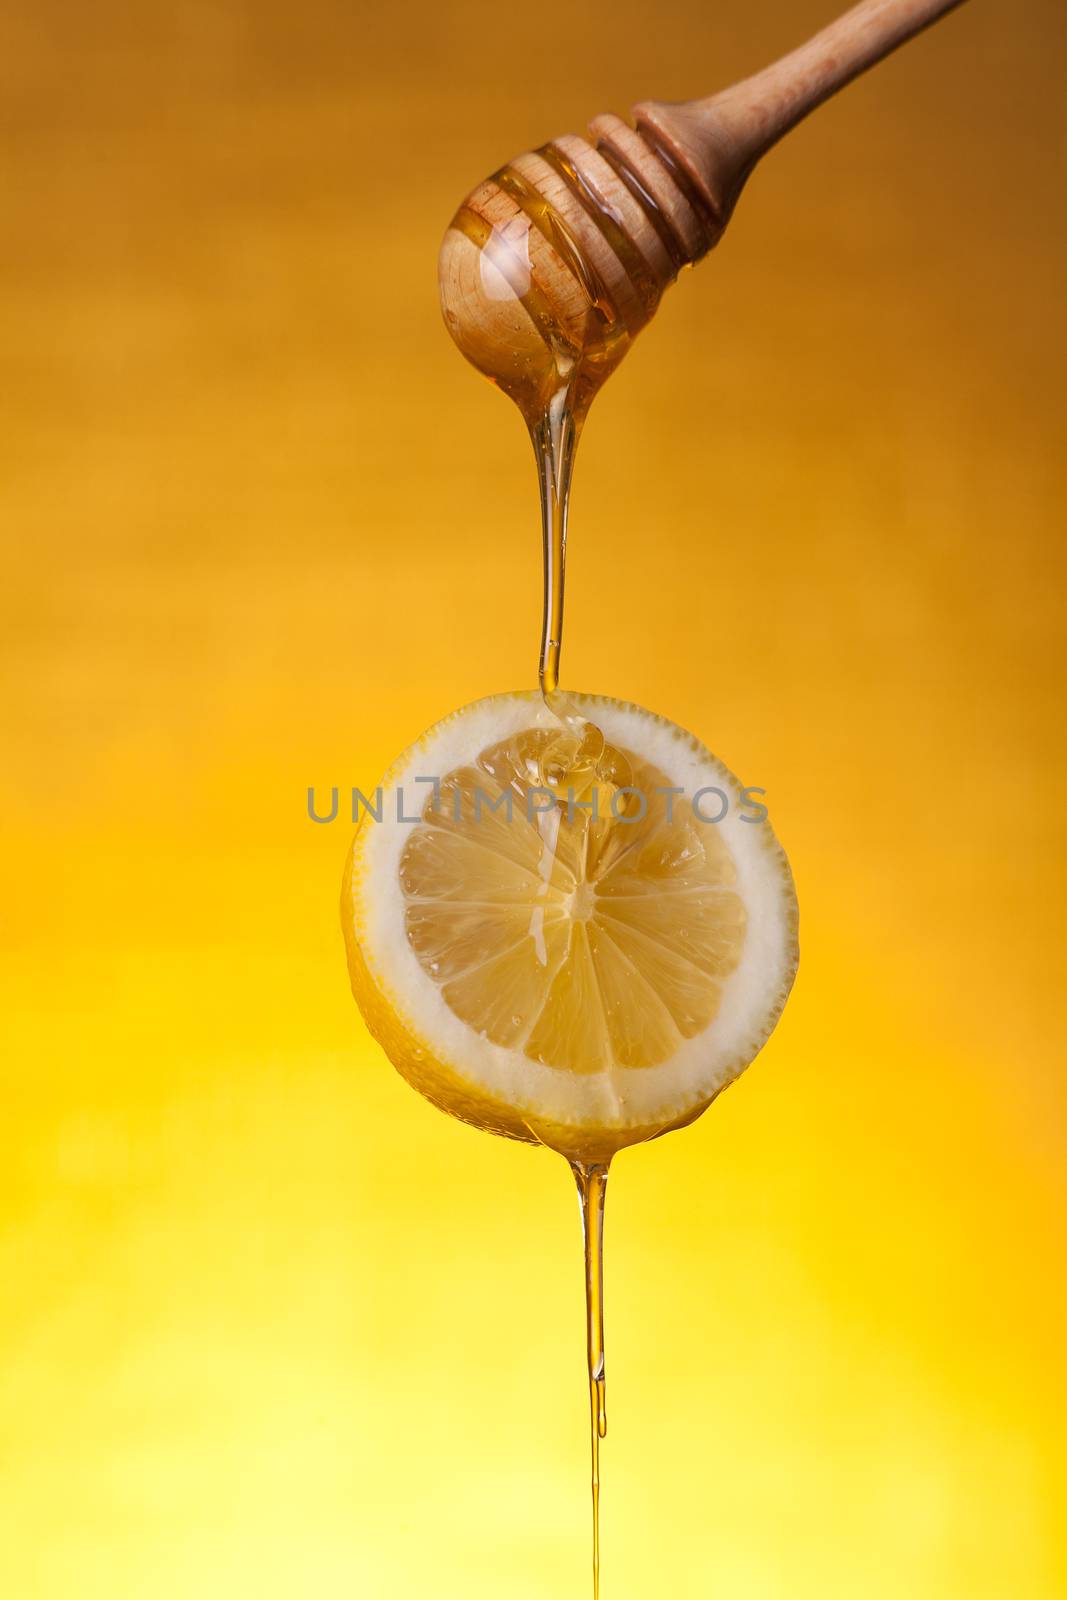 Honey flowing on lemon slice  by Elisanth